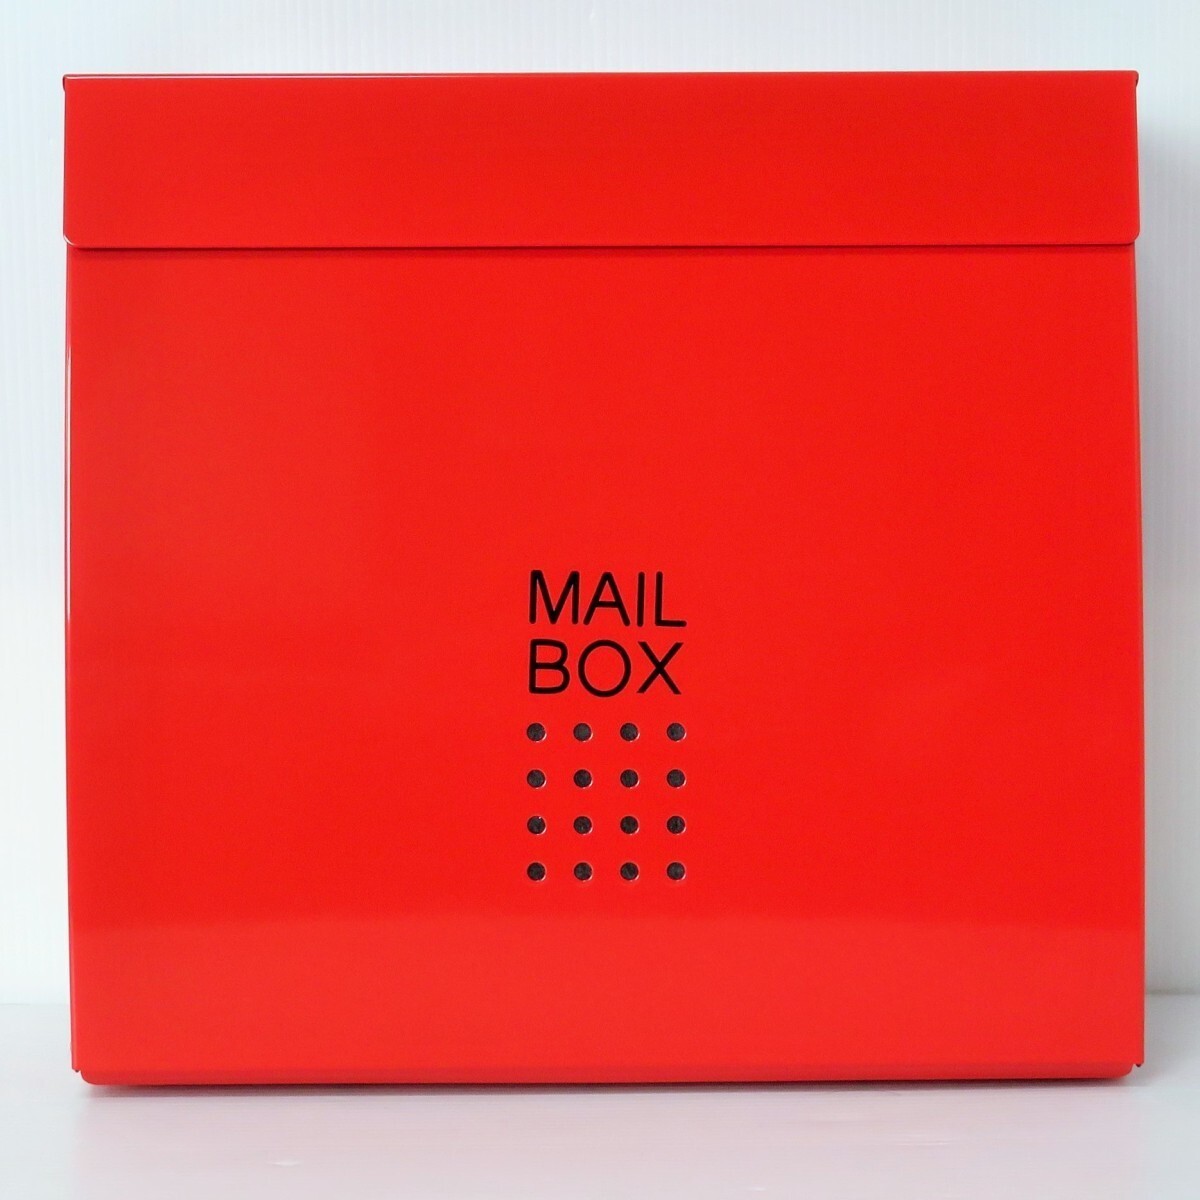 セール6月30日まで 郵便ポスト郵便受けおしゃれかわいい人気北欧大型メールボックス 壁掛け鍵付きマグネット付きつやあり赤色ポストpm173-1_画像2